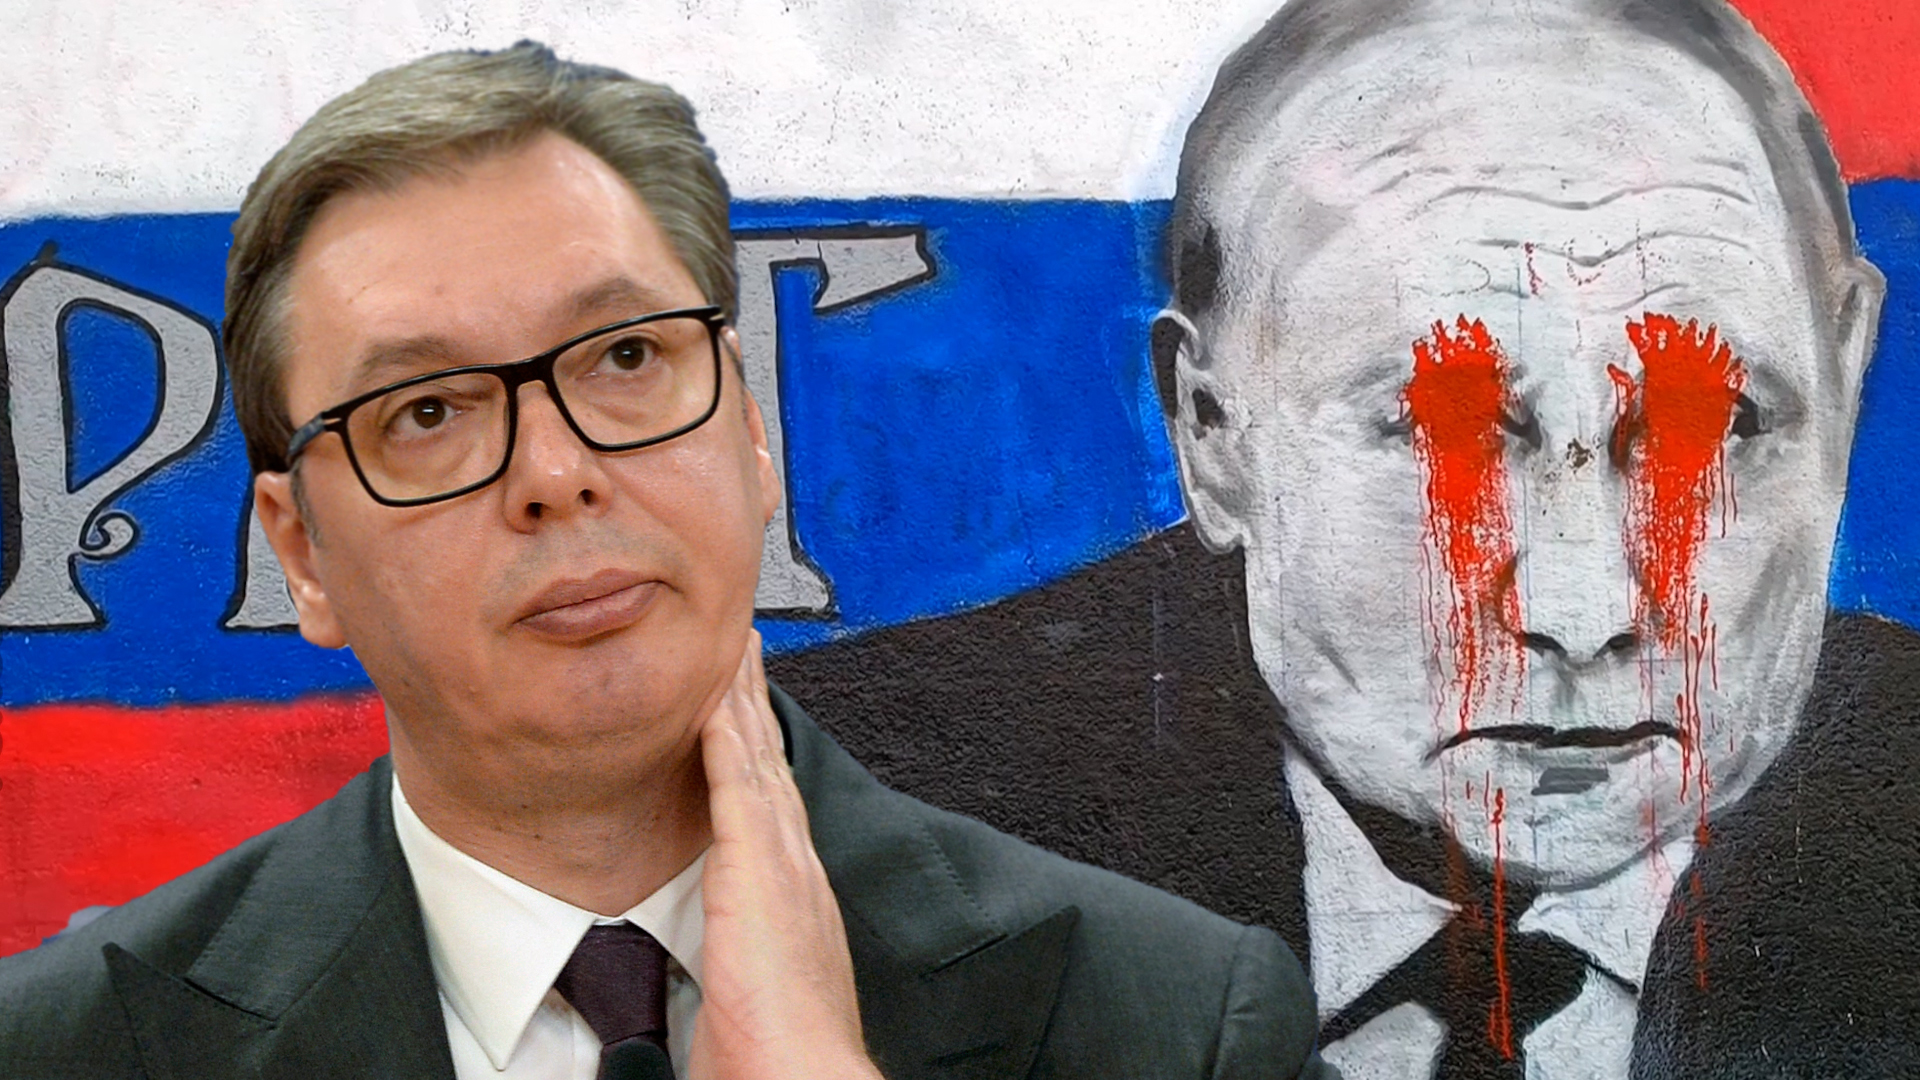 Krv u Putinovim očima na muralu u Beogradu